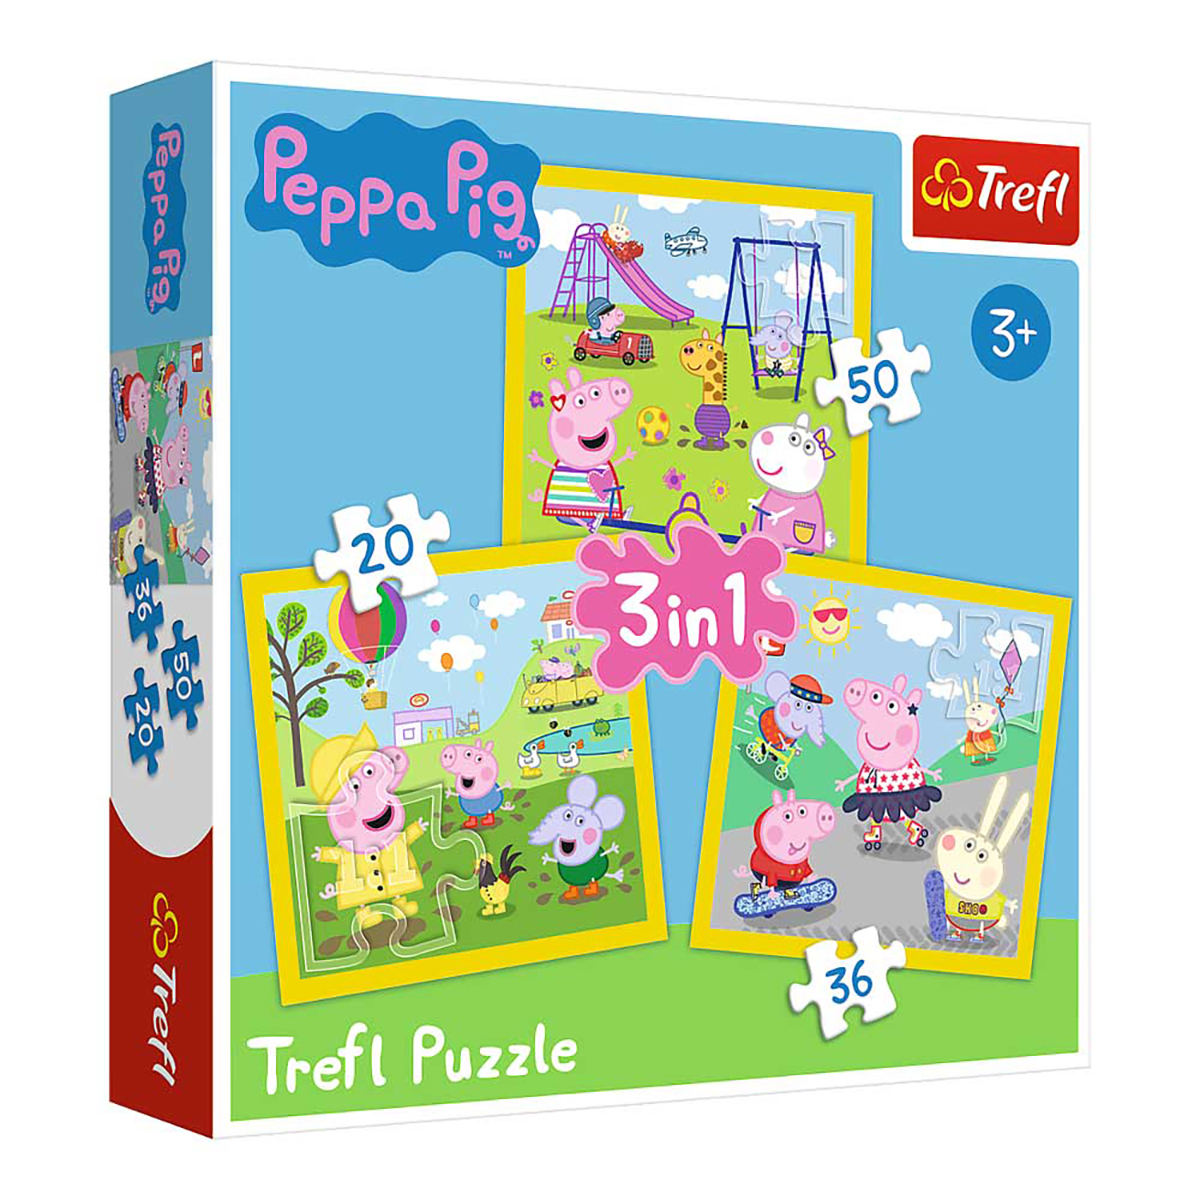 schöner Tag 20-50 Peppa 3in1 Puzzle TREFL - Teile - Ein Pig Puzzle